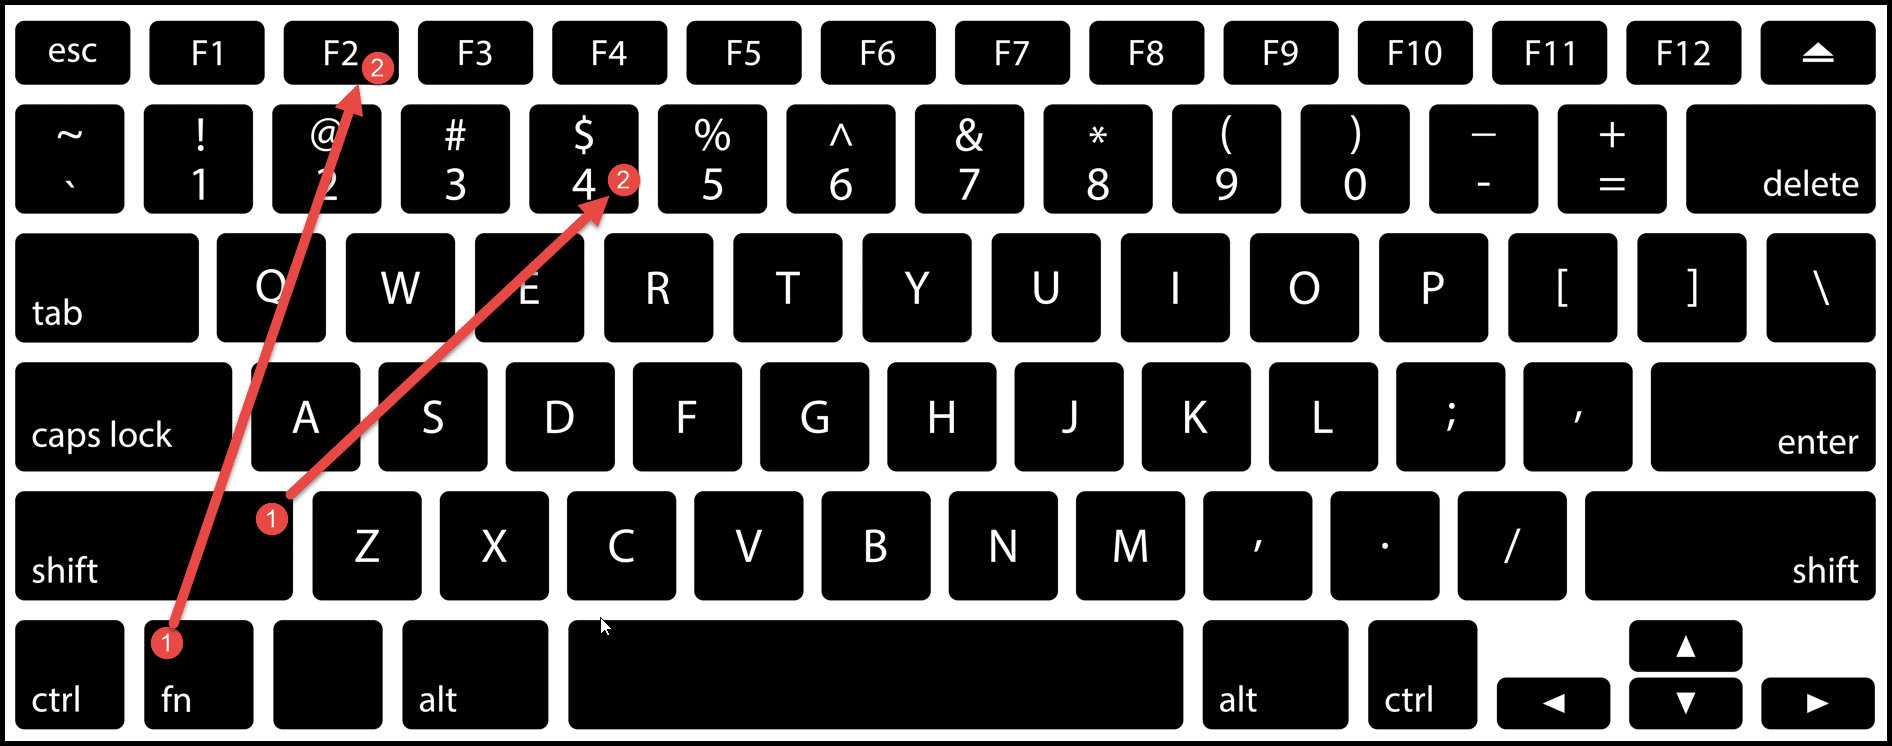 keyboard-keys-to-add-$-sign